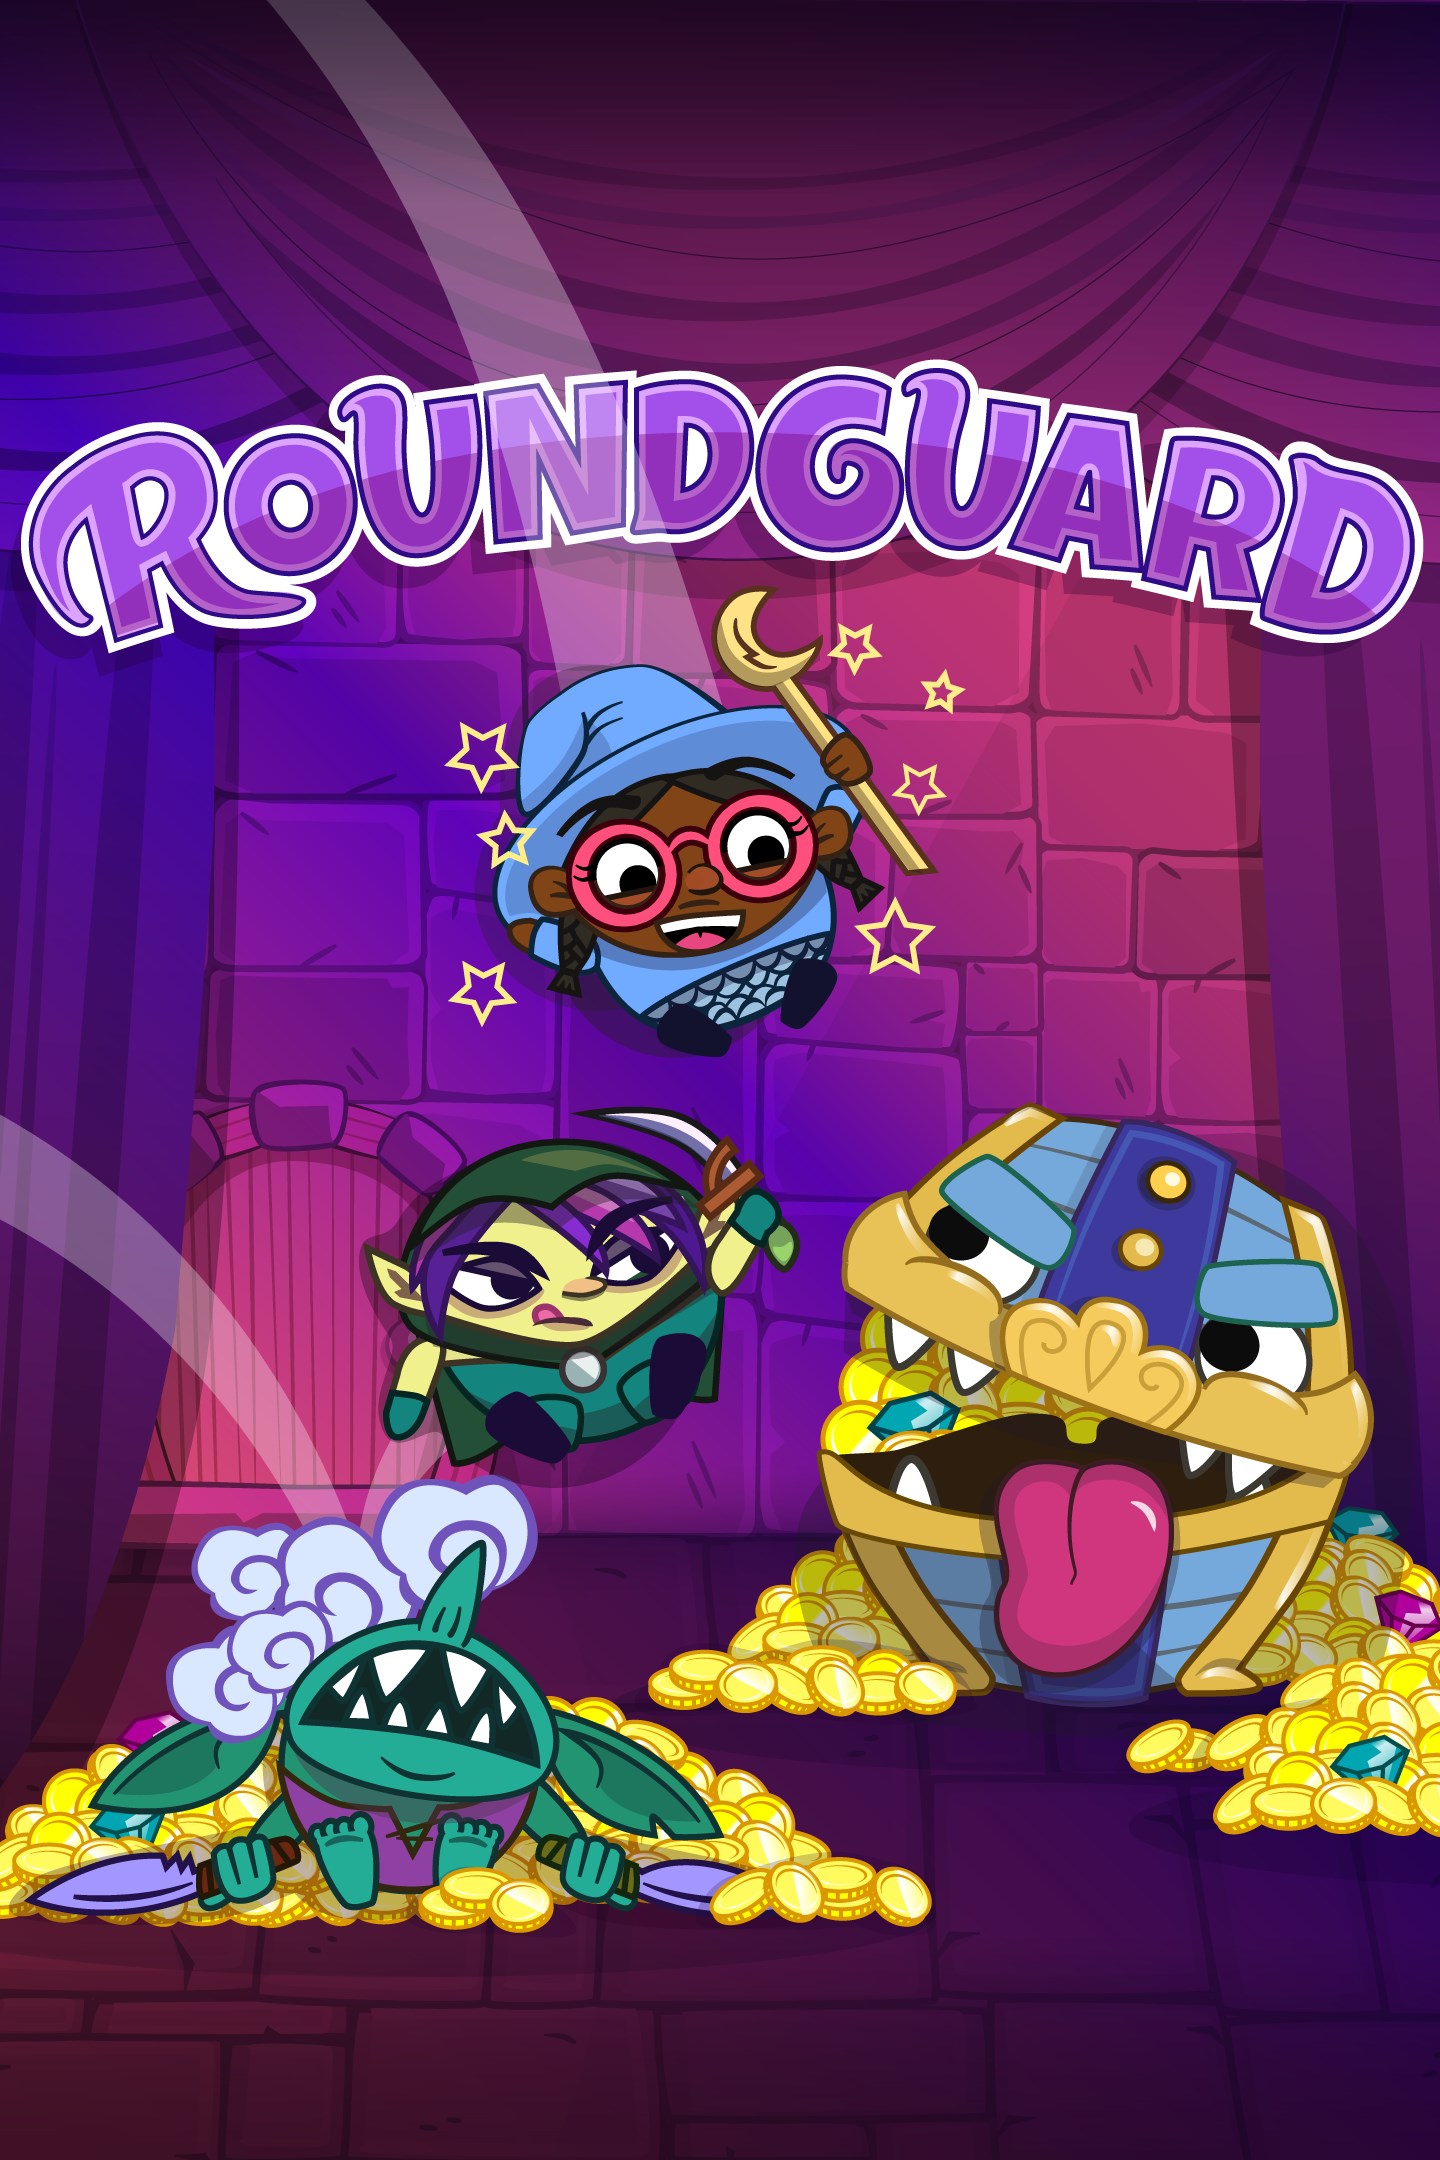 Roundguard apporte son combo unique de Dungeon Crawler et Bouncy Physics sur Xbox One